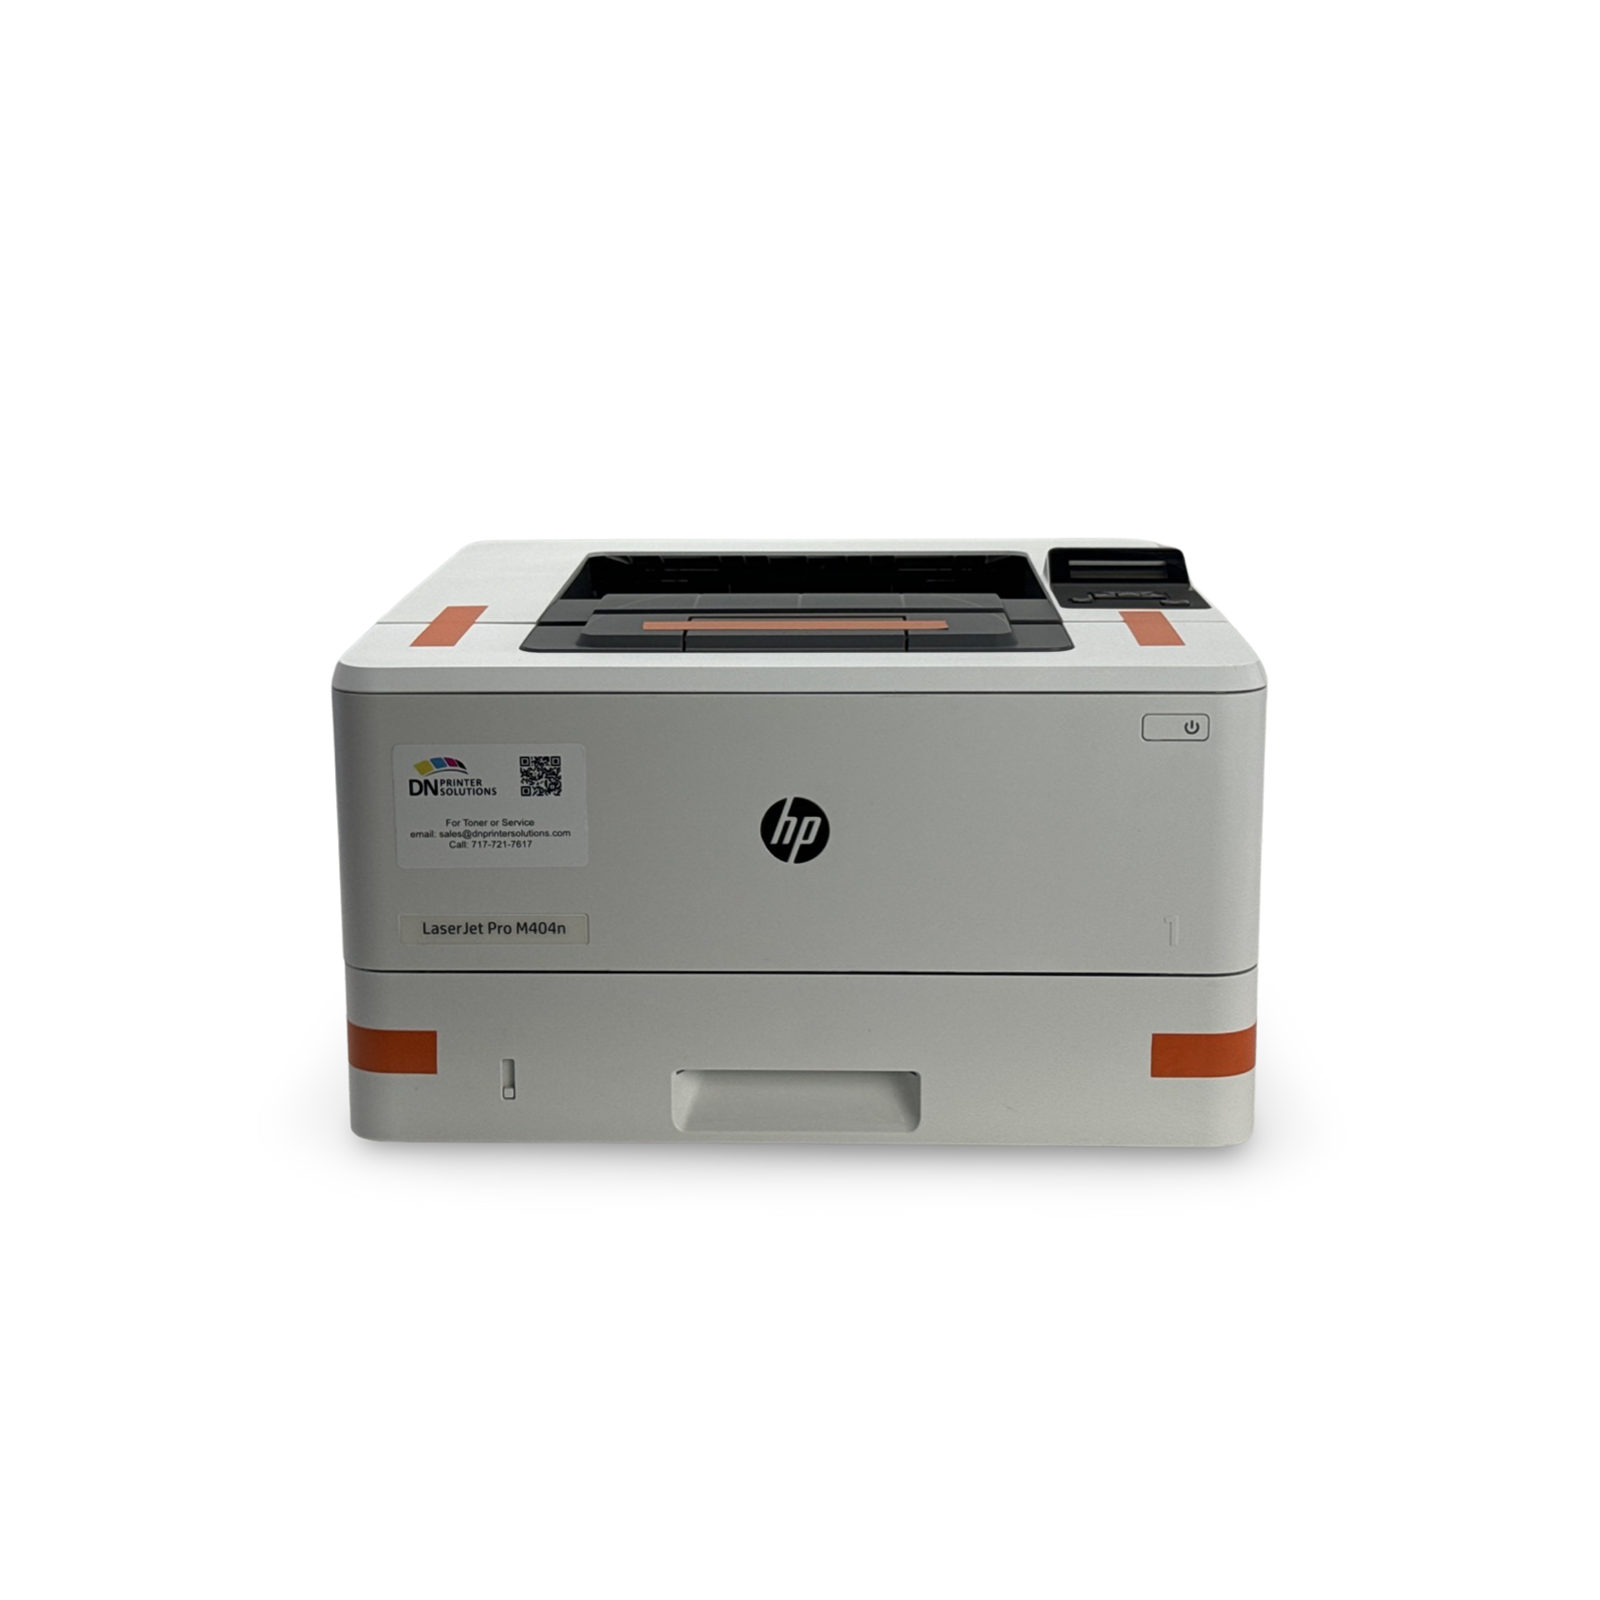 HP LaserJet Pro M404n Printer W1A52A Brand New